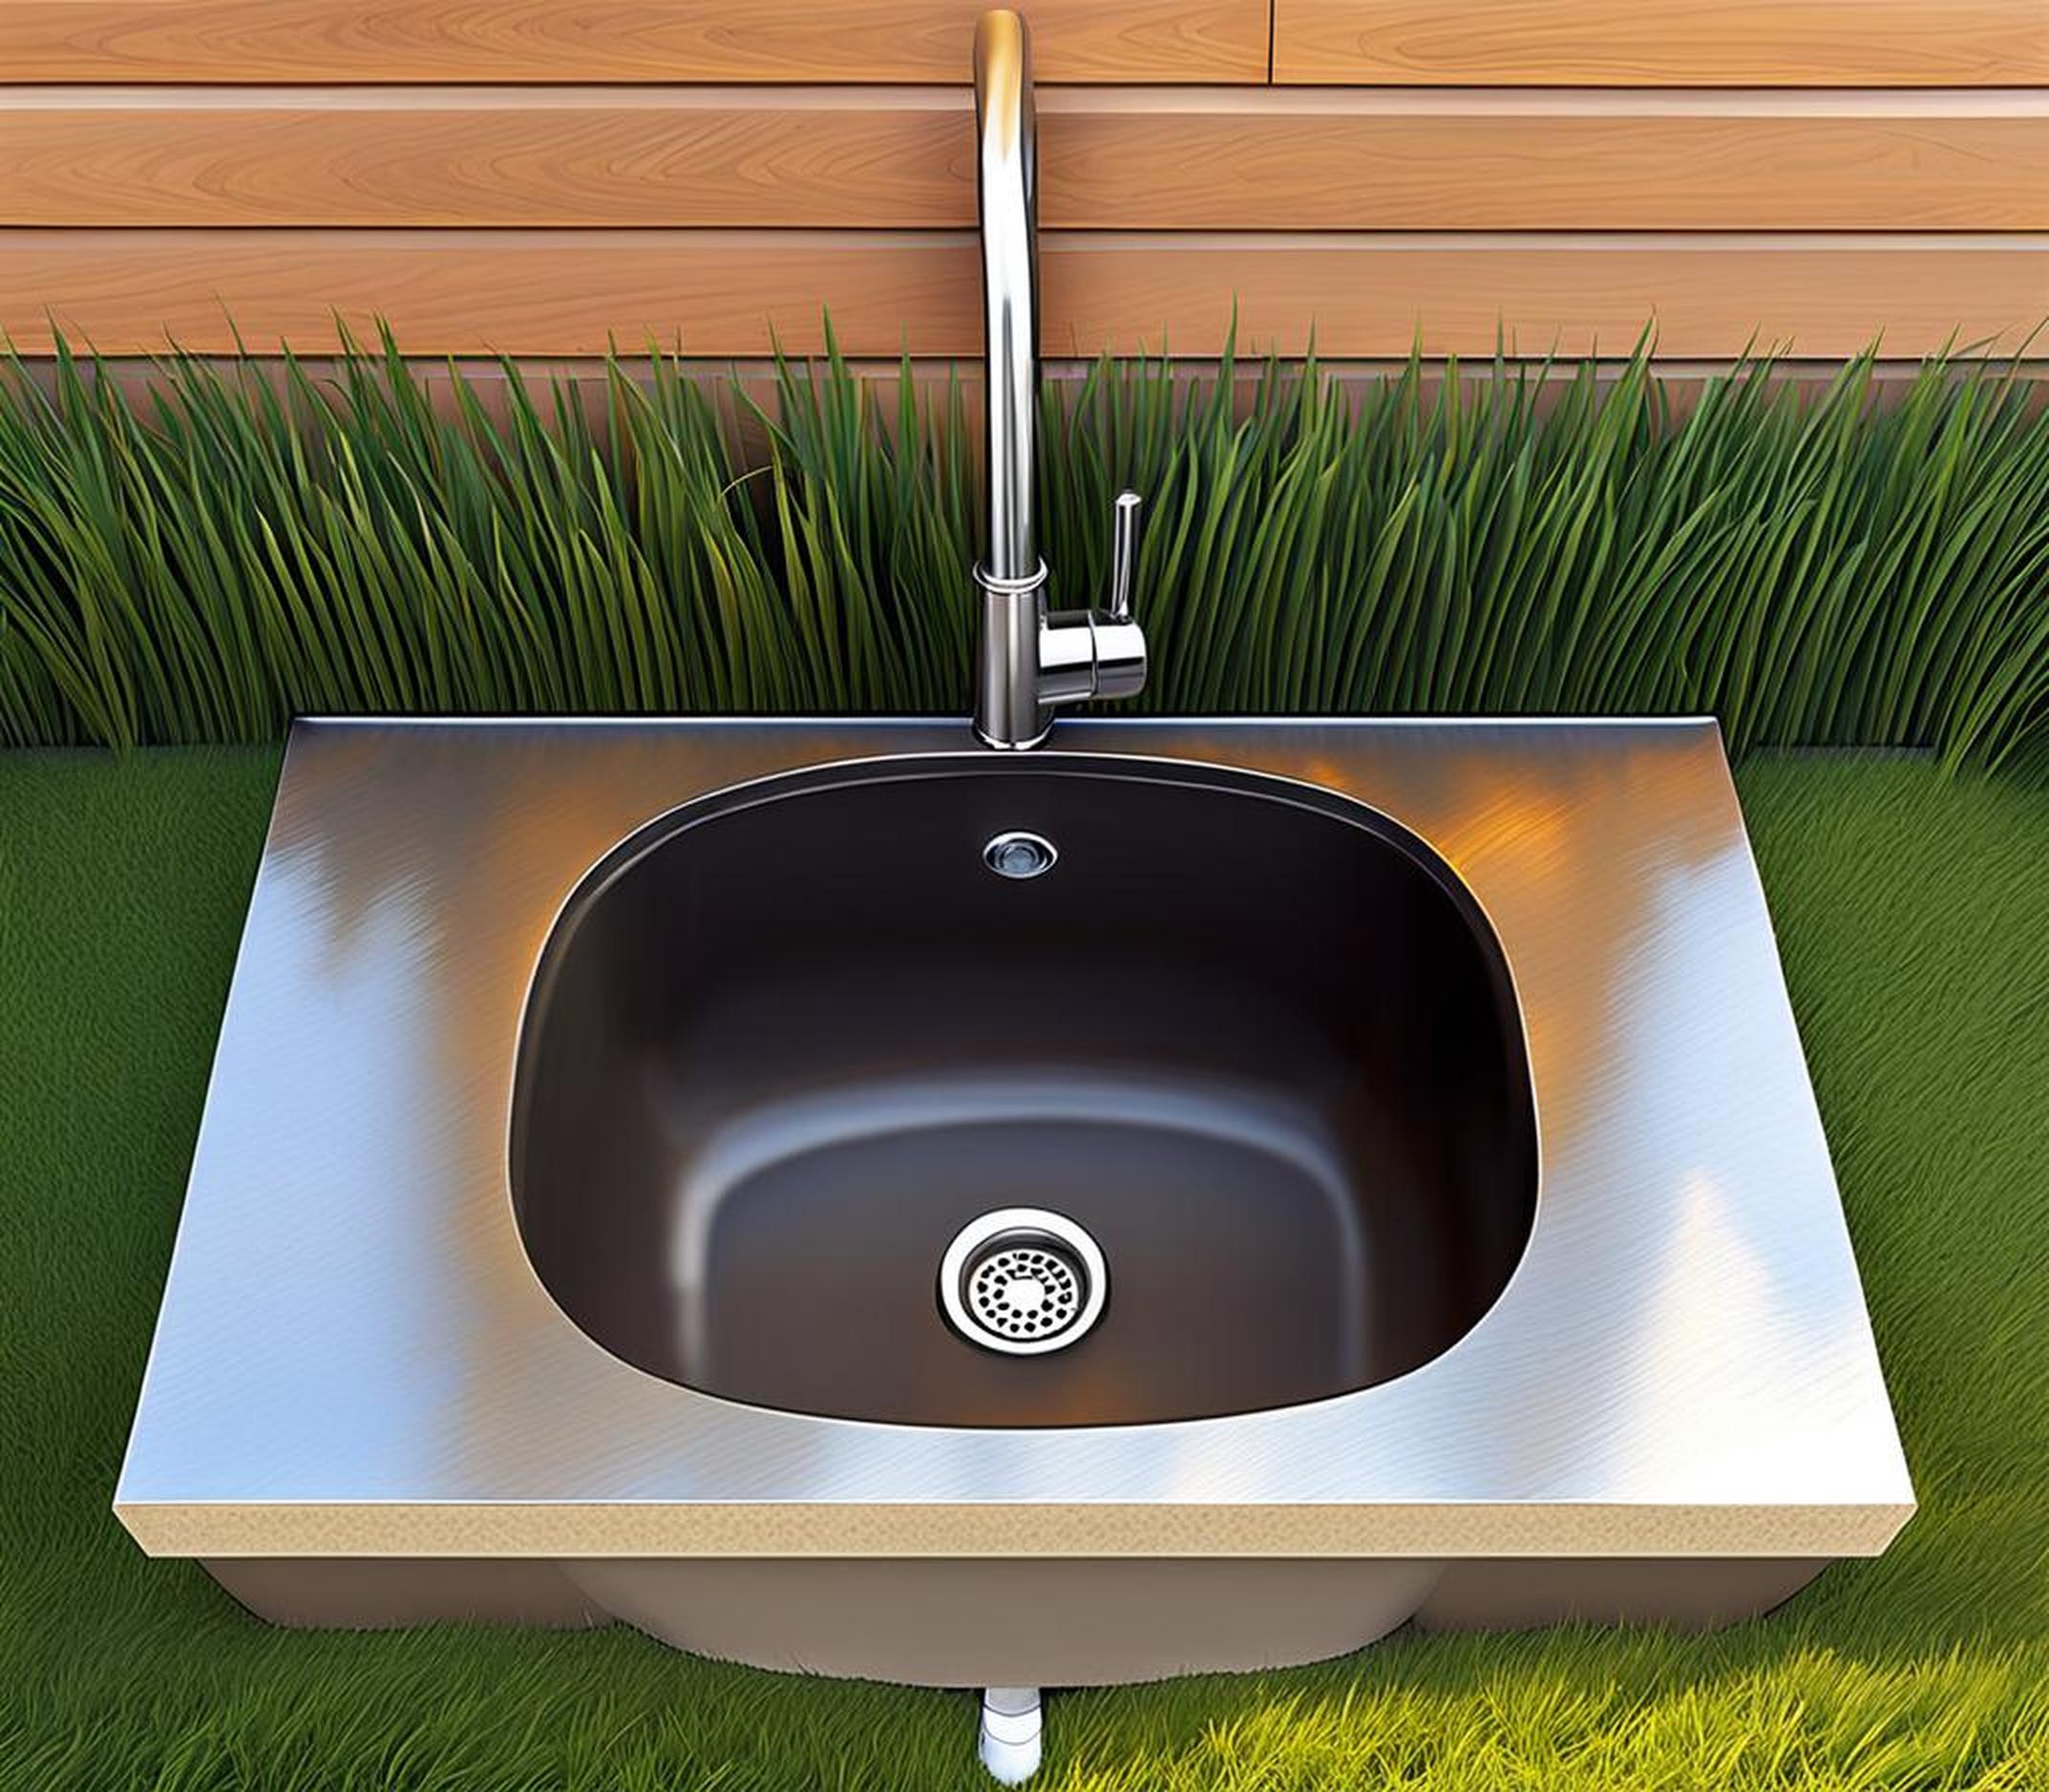 outdoor sink drain options